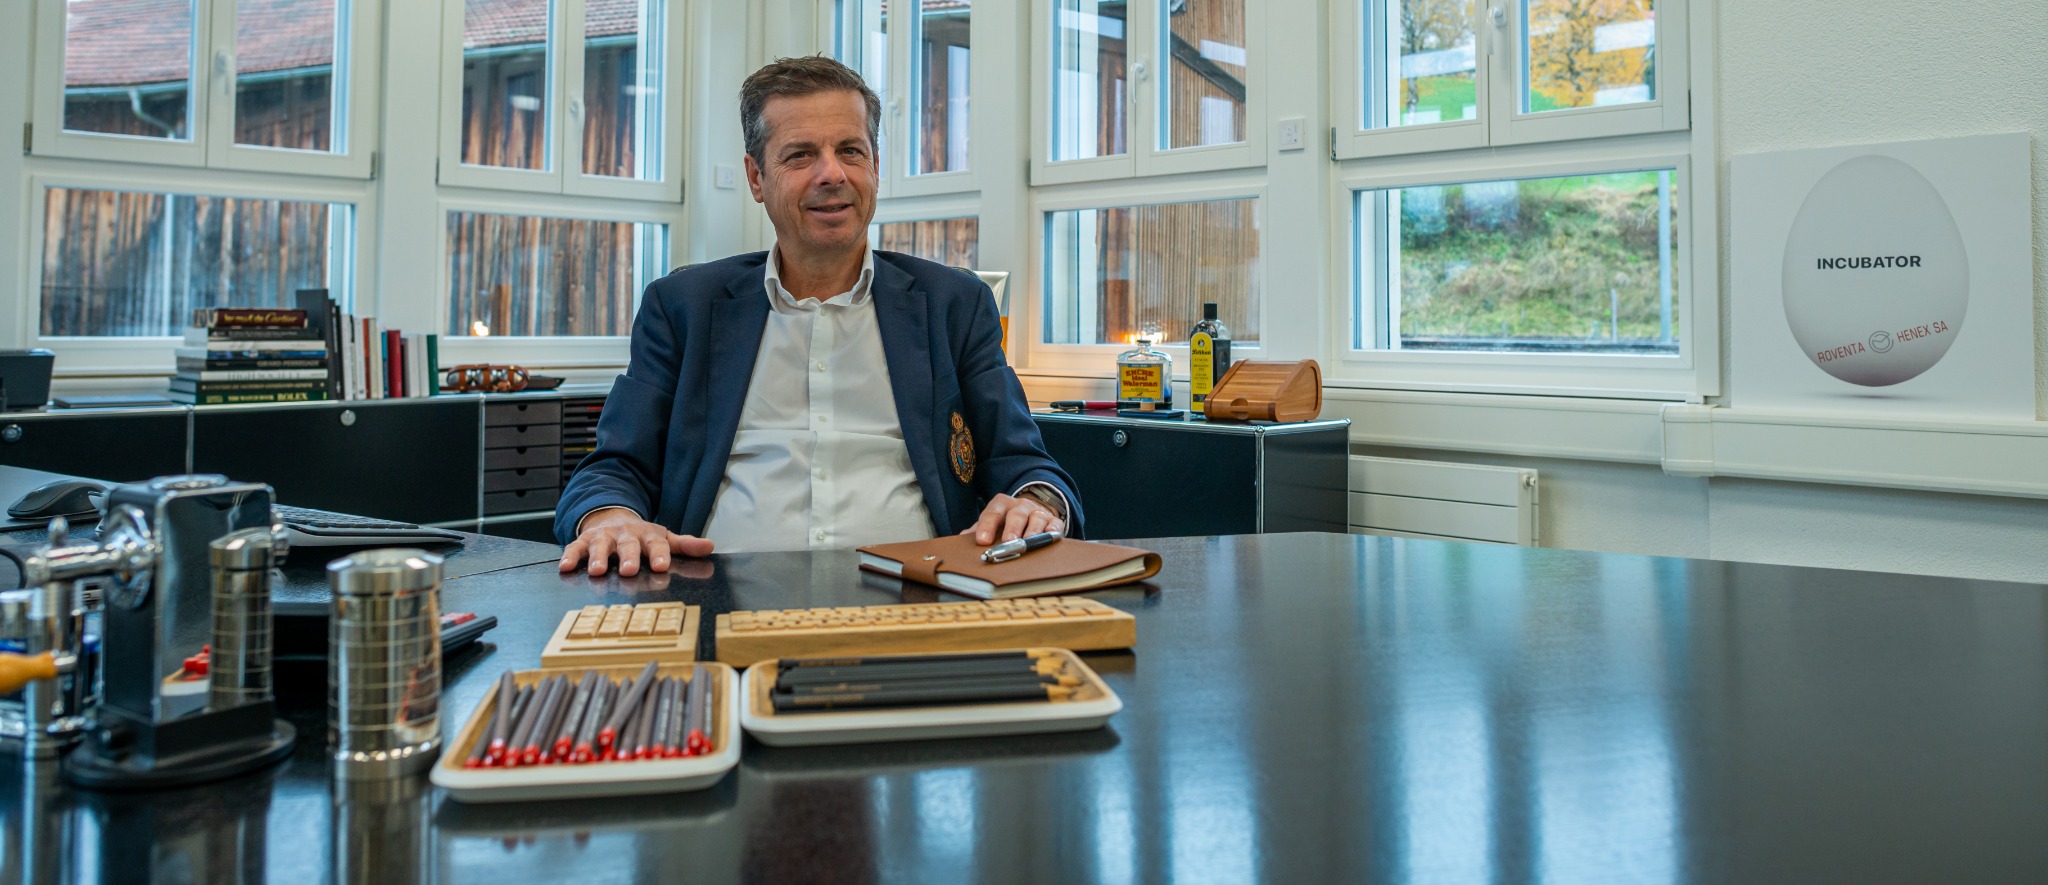 Jérôme Biard sitzt an einem grosszügigen Bürotisc, vor sich gespitzte Bleistifte